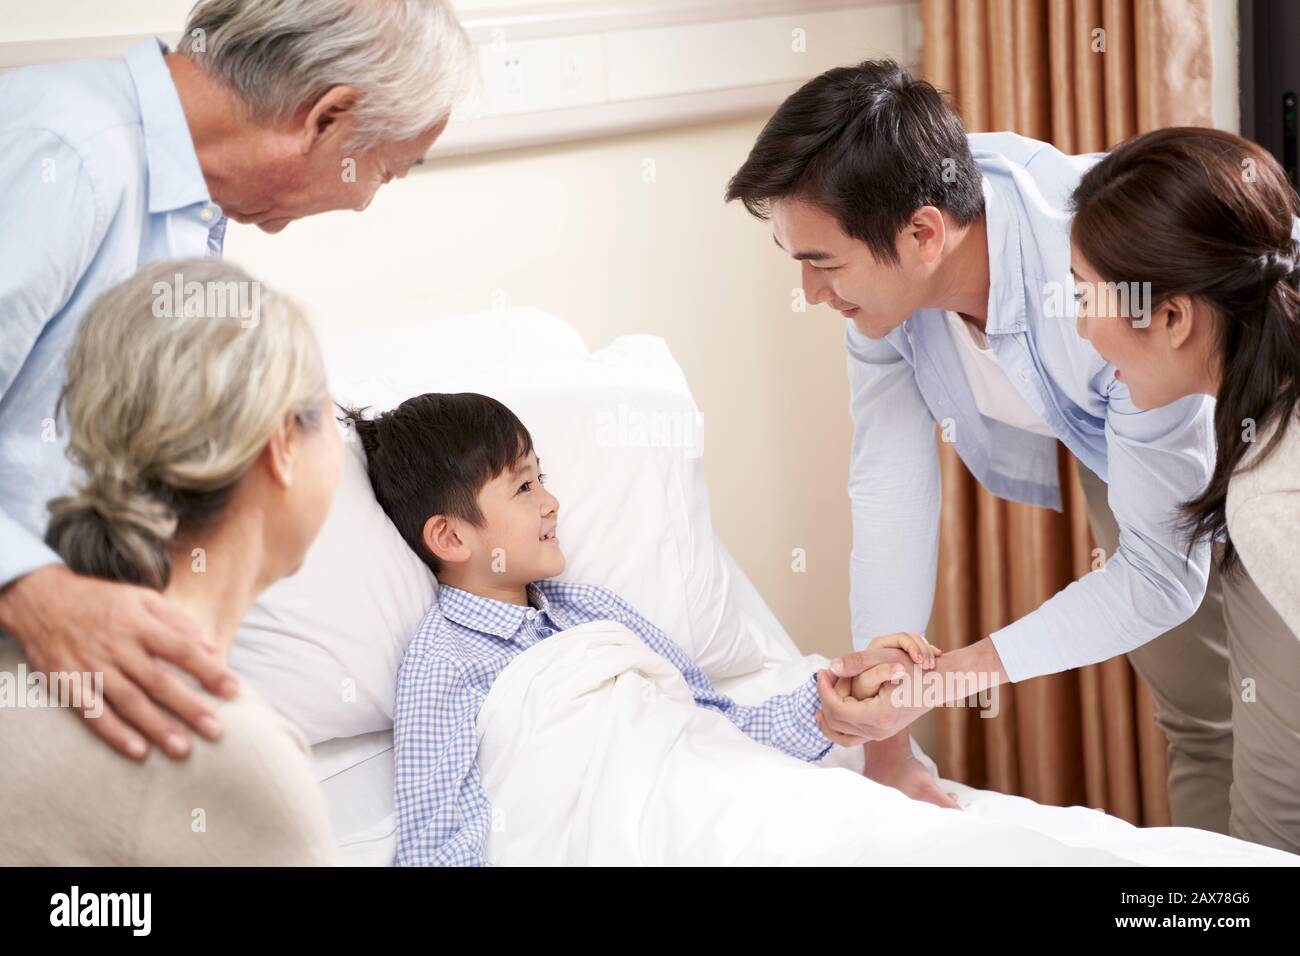 Asia cinco años niño acostado en la cama en el hospital recibe la visita de sus padres y sus abuelos. Foto de stock